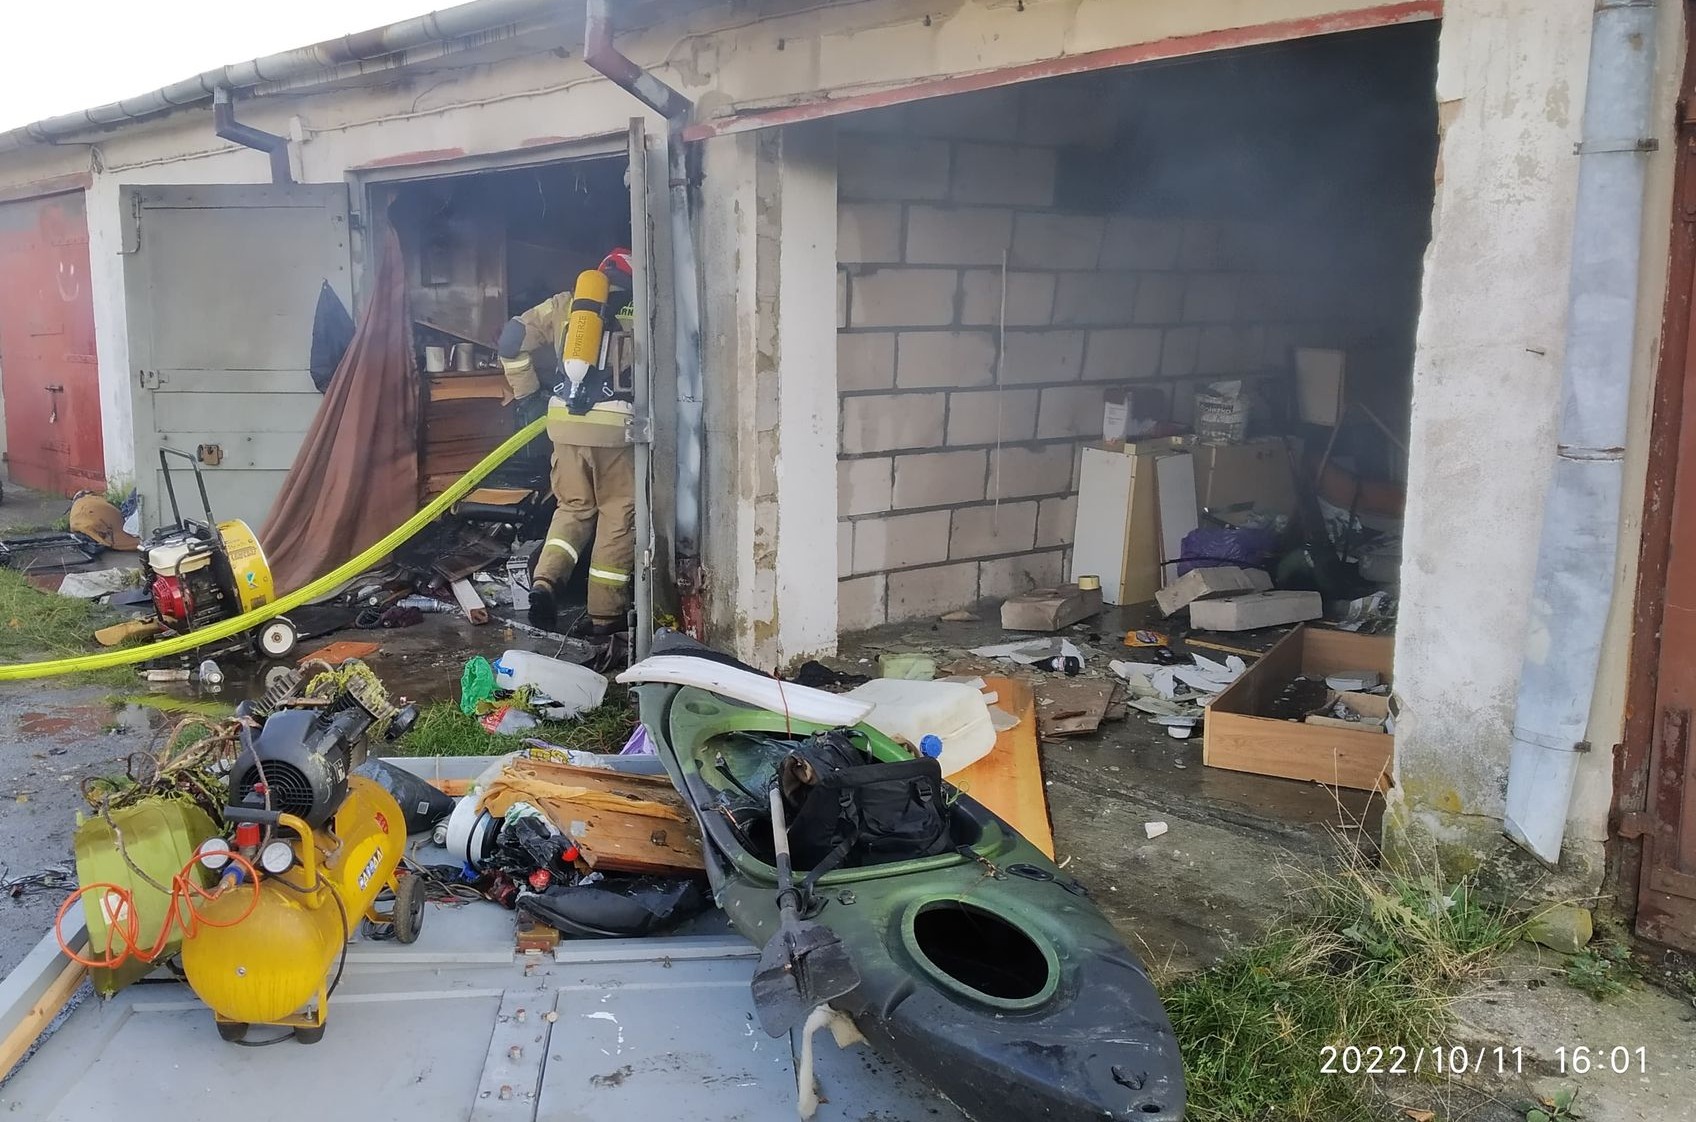 Wybuch w garażu. W trakcie akcji gaśniczej strażacy natrafili na przedmiot przypominający pocisk (zdjęcia)